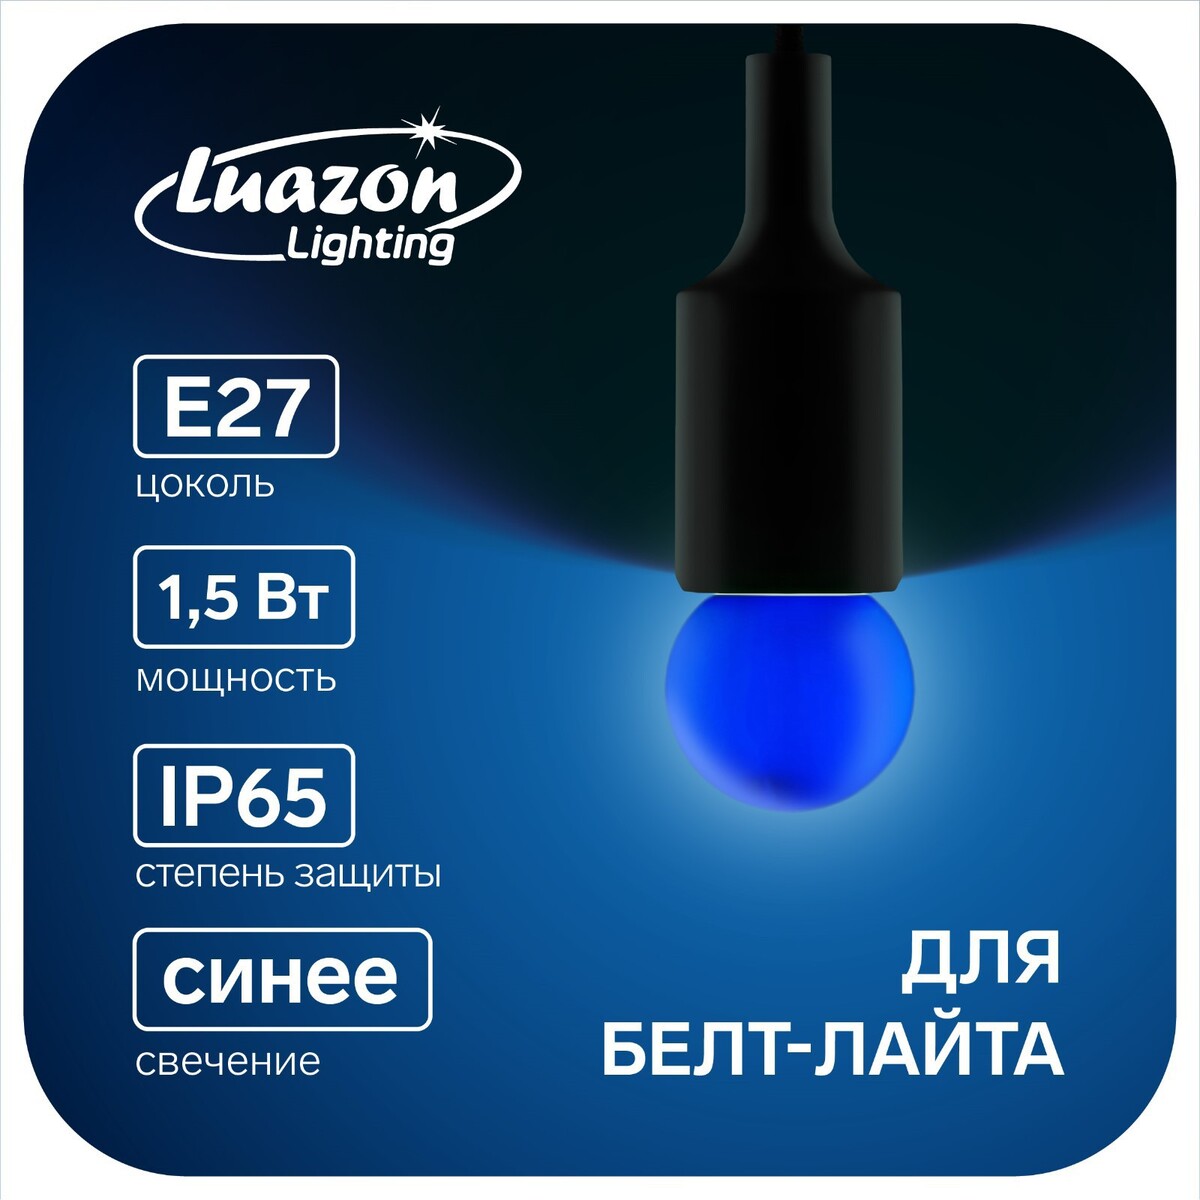 Лампа светодиодная luazon lighting, g45, е27, 1.5 вт, для белт-лайта, синяя, наб 20 шт лампа светодиодная e27 14 вт 230 в груша 4500 к свет нейтральный белый general lighting systems glden wa60